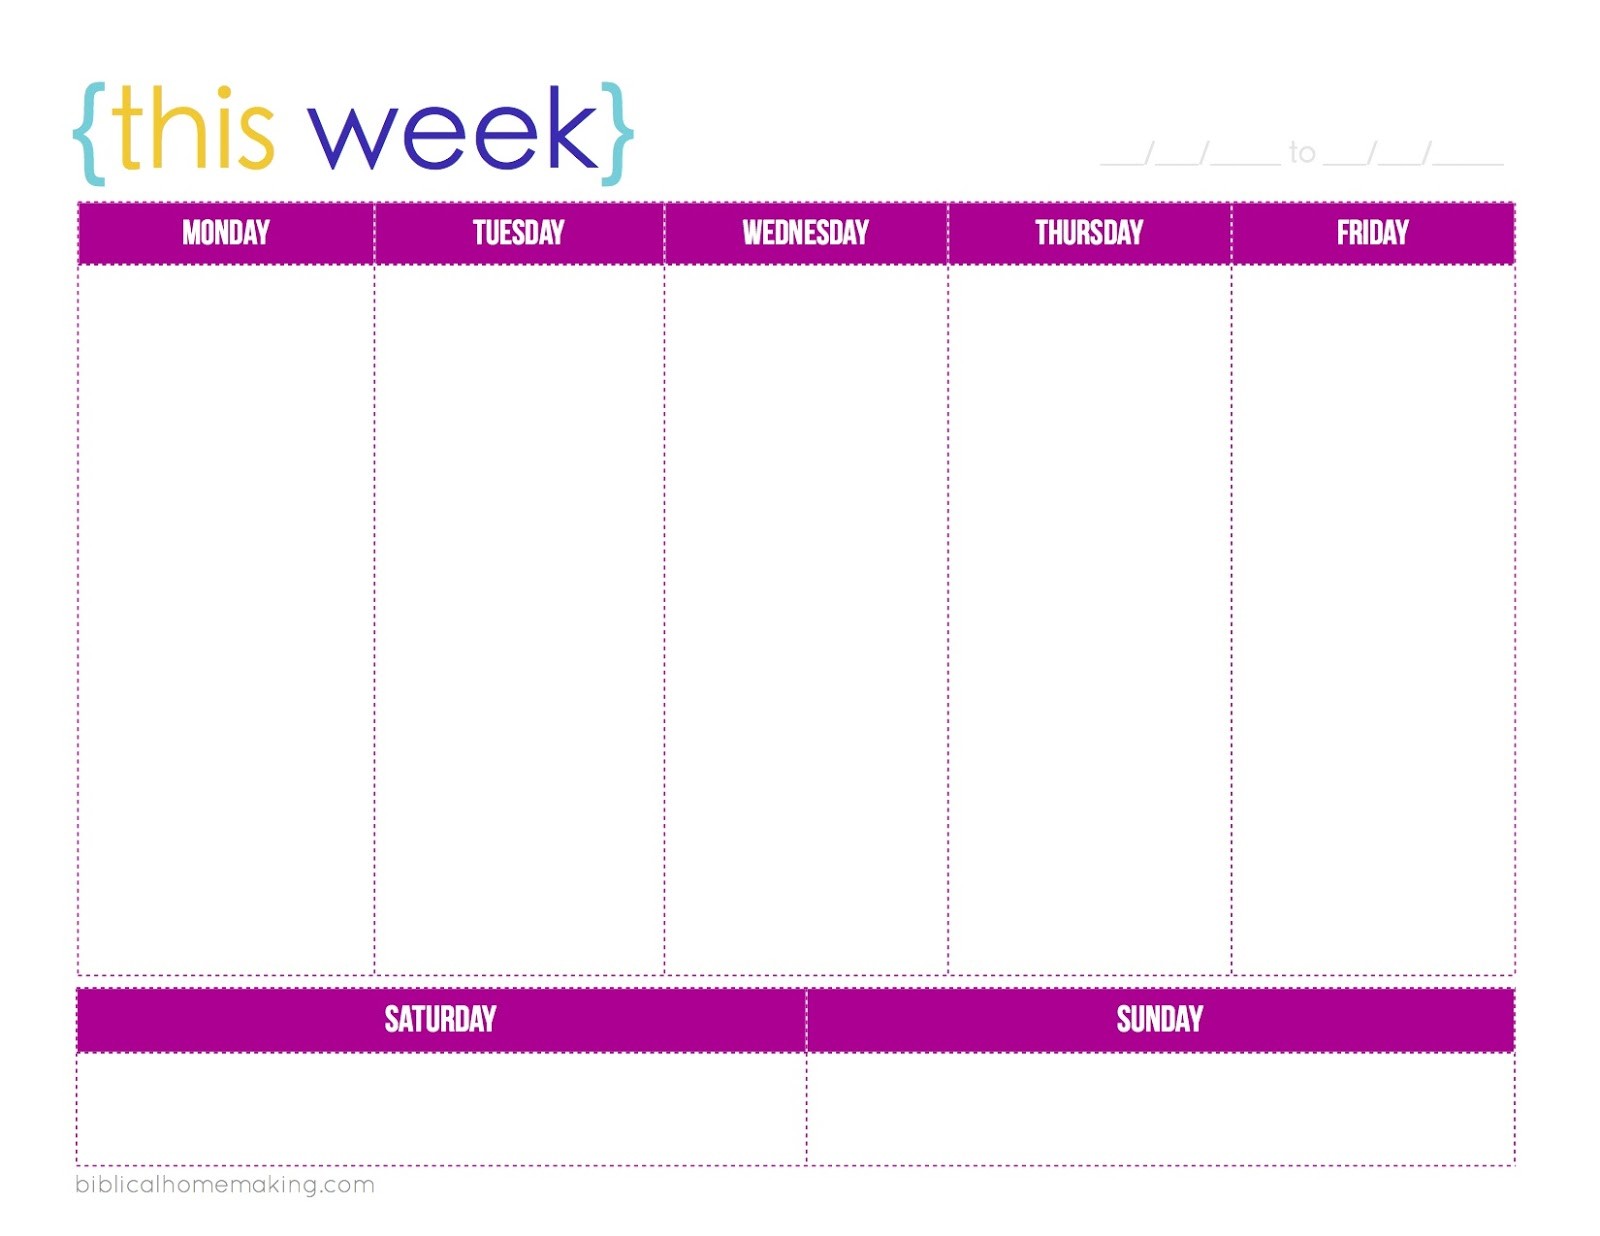 One Week Printable Calendar This Week A Free Weekly Planner Printable Biblical